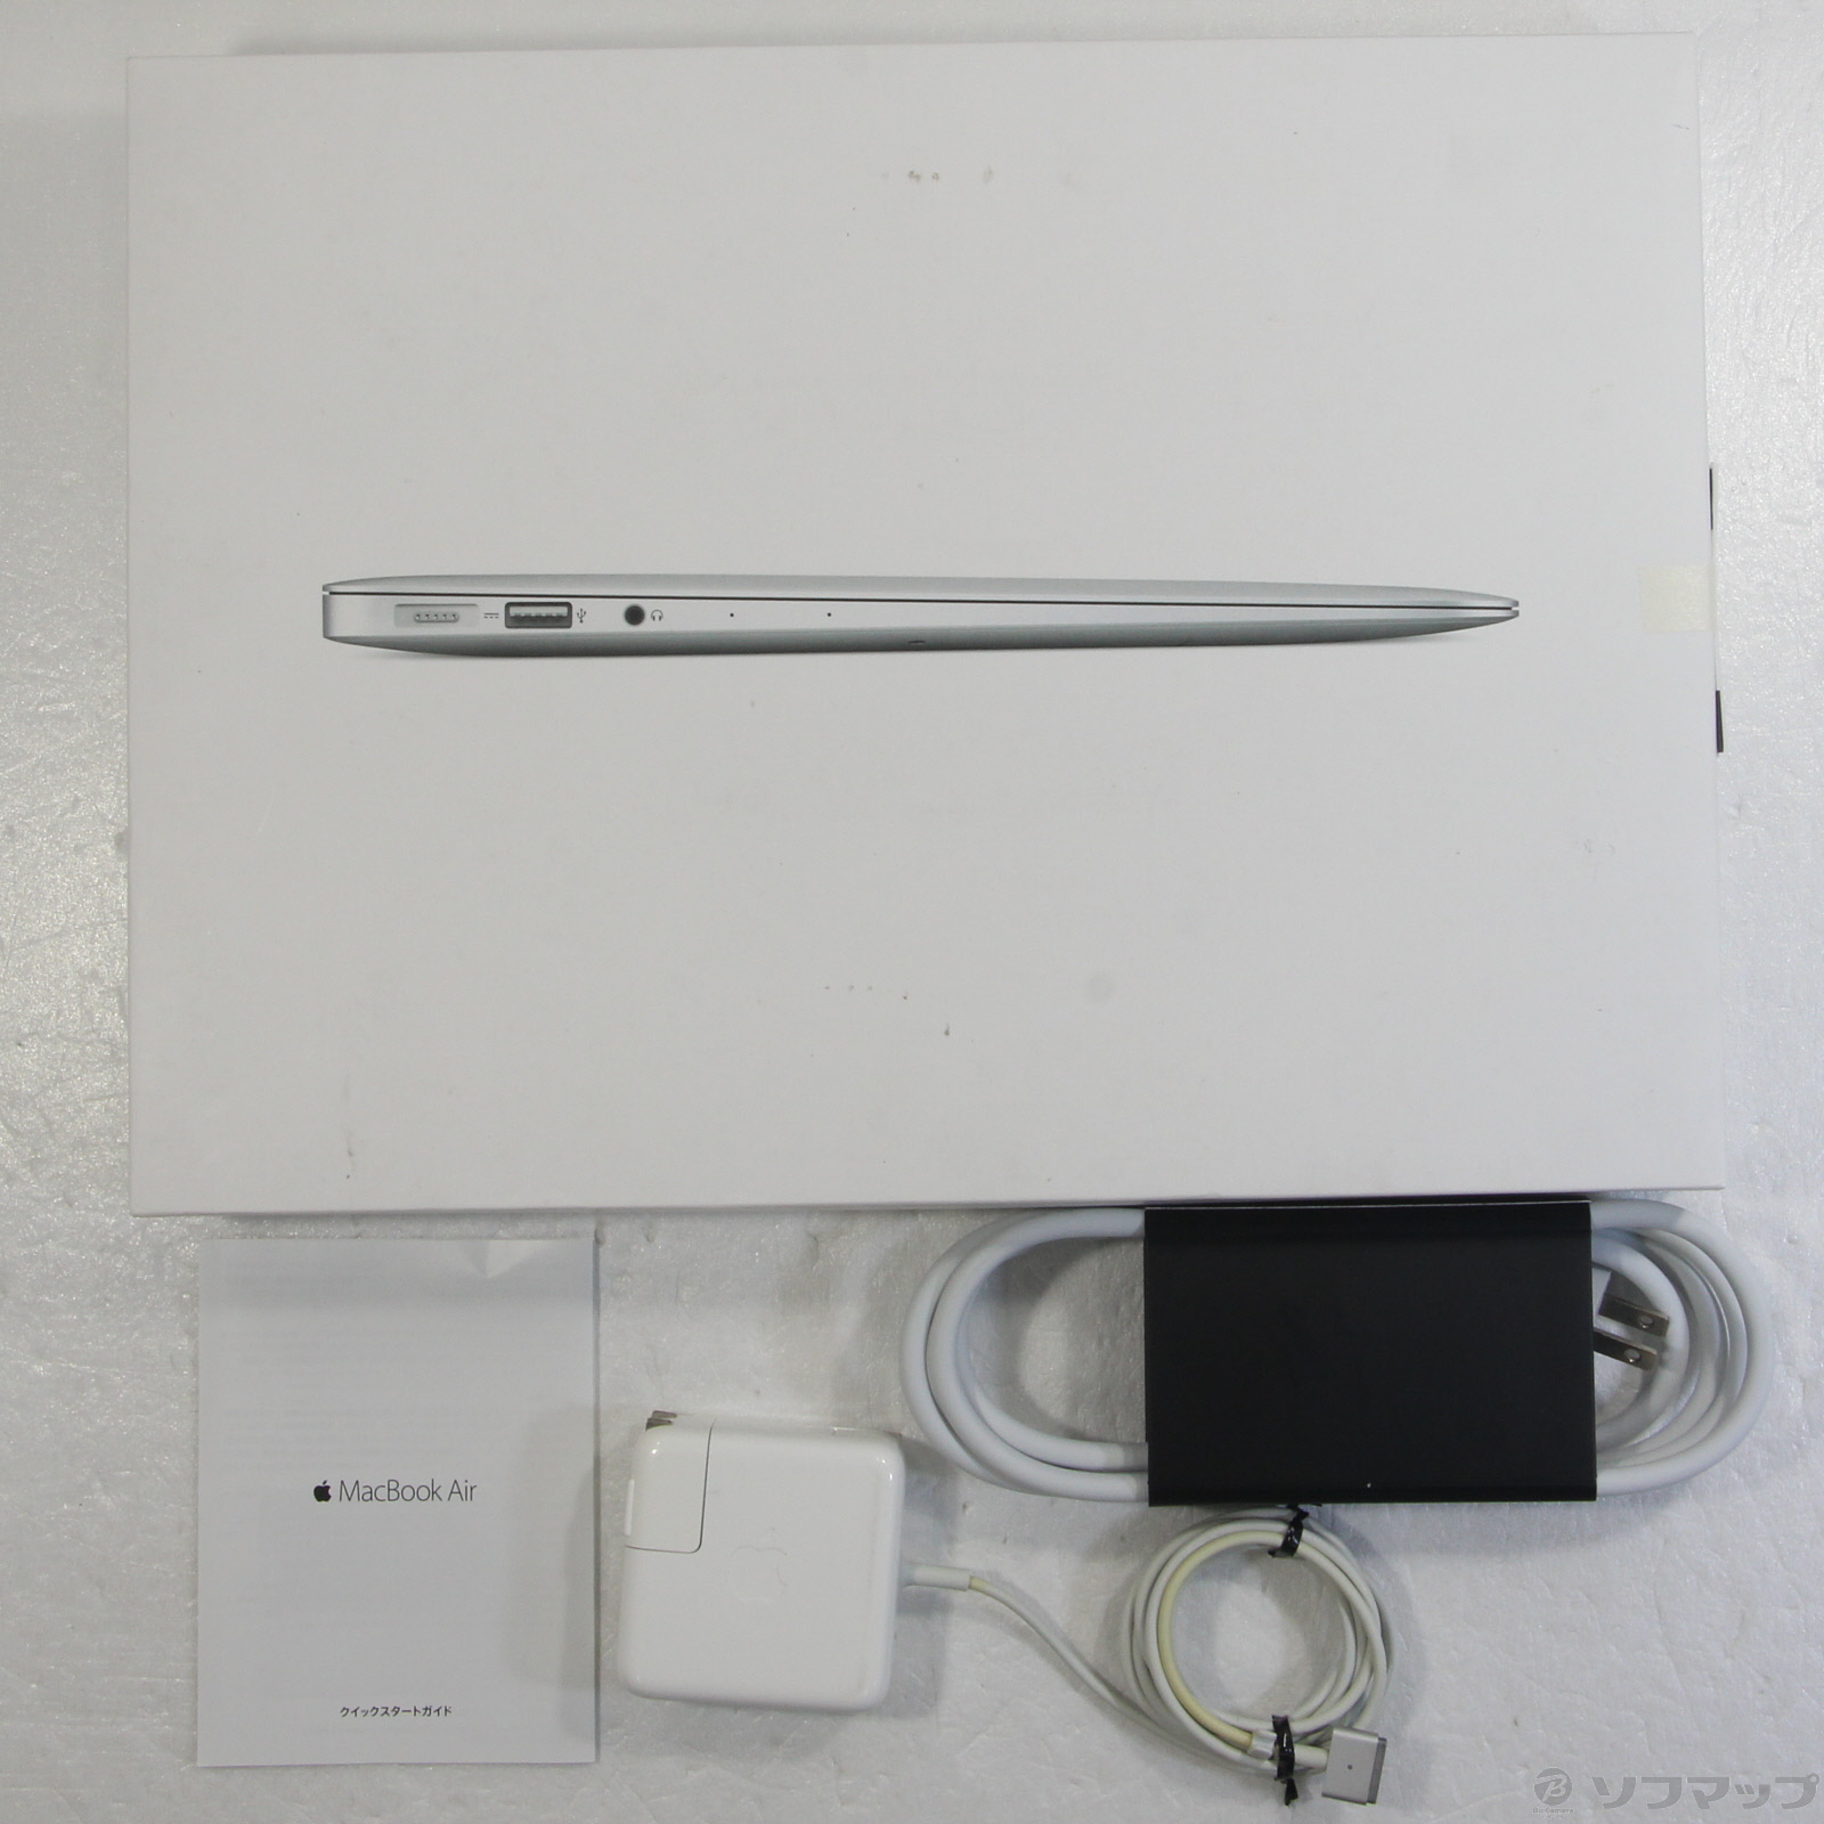 MacBook Air 2017年モデル 13 inch MQD32J/A